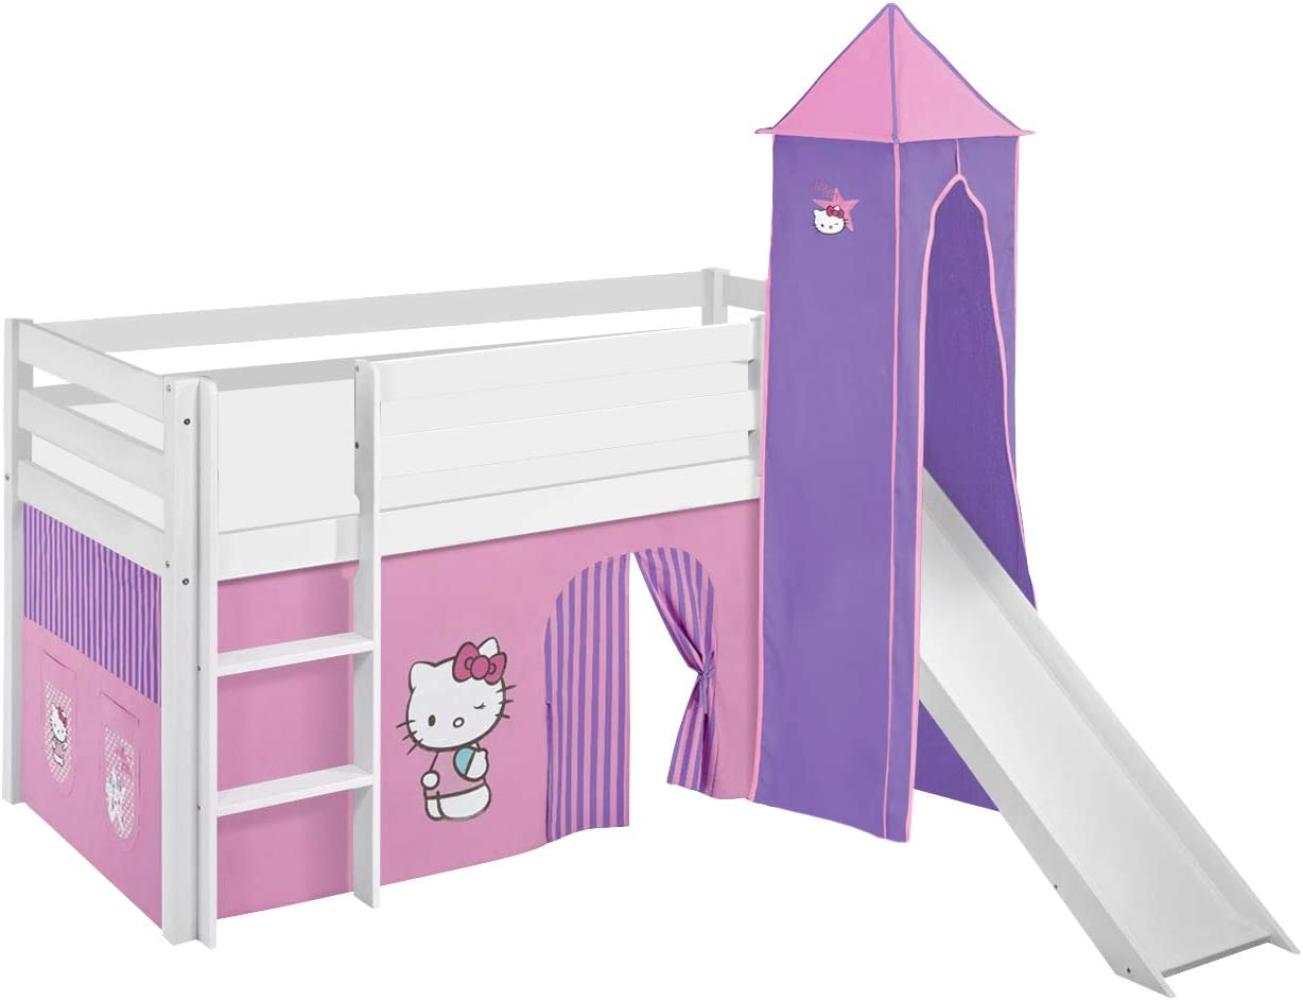 Lilokids 'Jelle' Spielbett 90 x 190 cm, Hello Kitty Lila, Kiefer massiv, mit Turm, Rutsche und Vorhang Bild 1